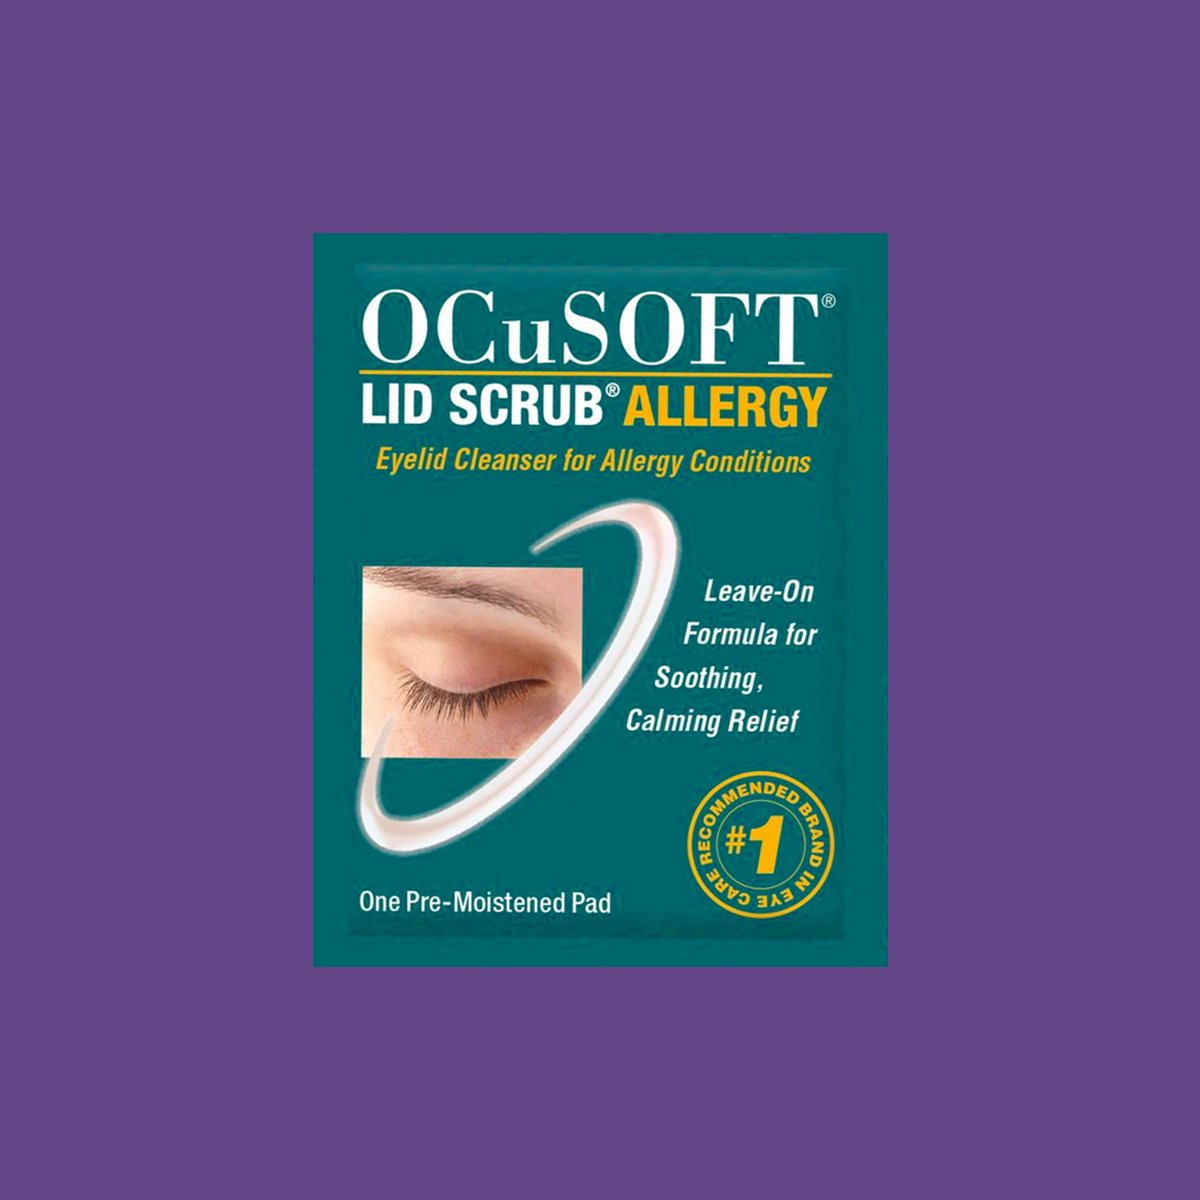 Ocusoft Lid Scrub  Allergy Eyelid Cleanser (30 Wipes)